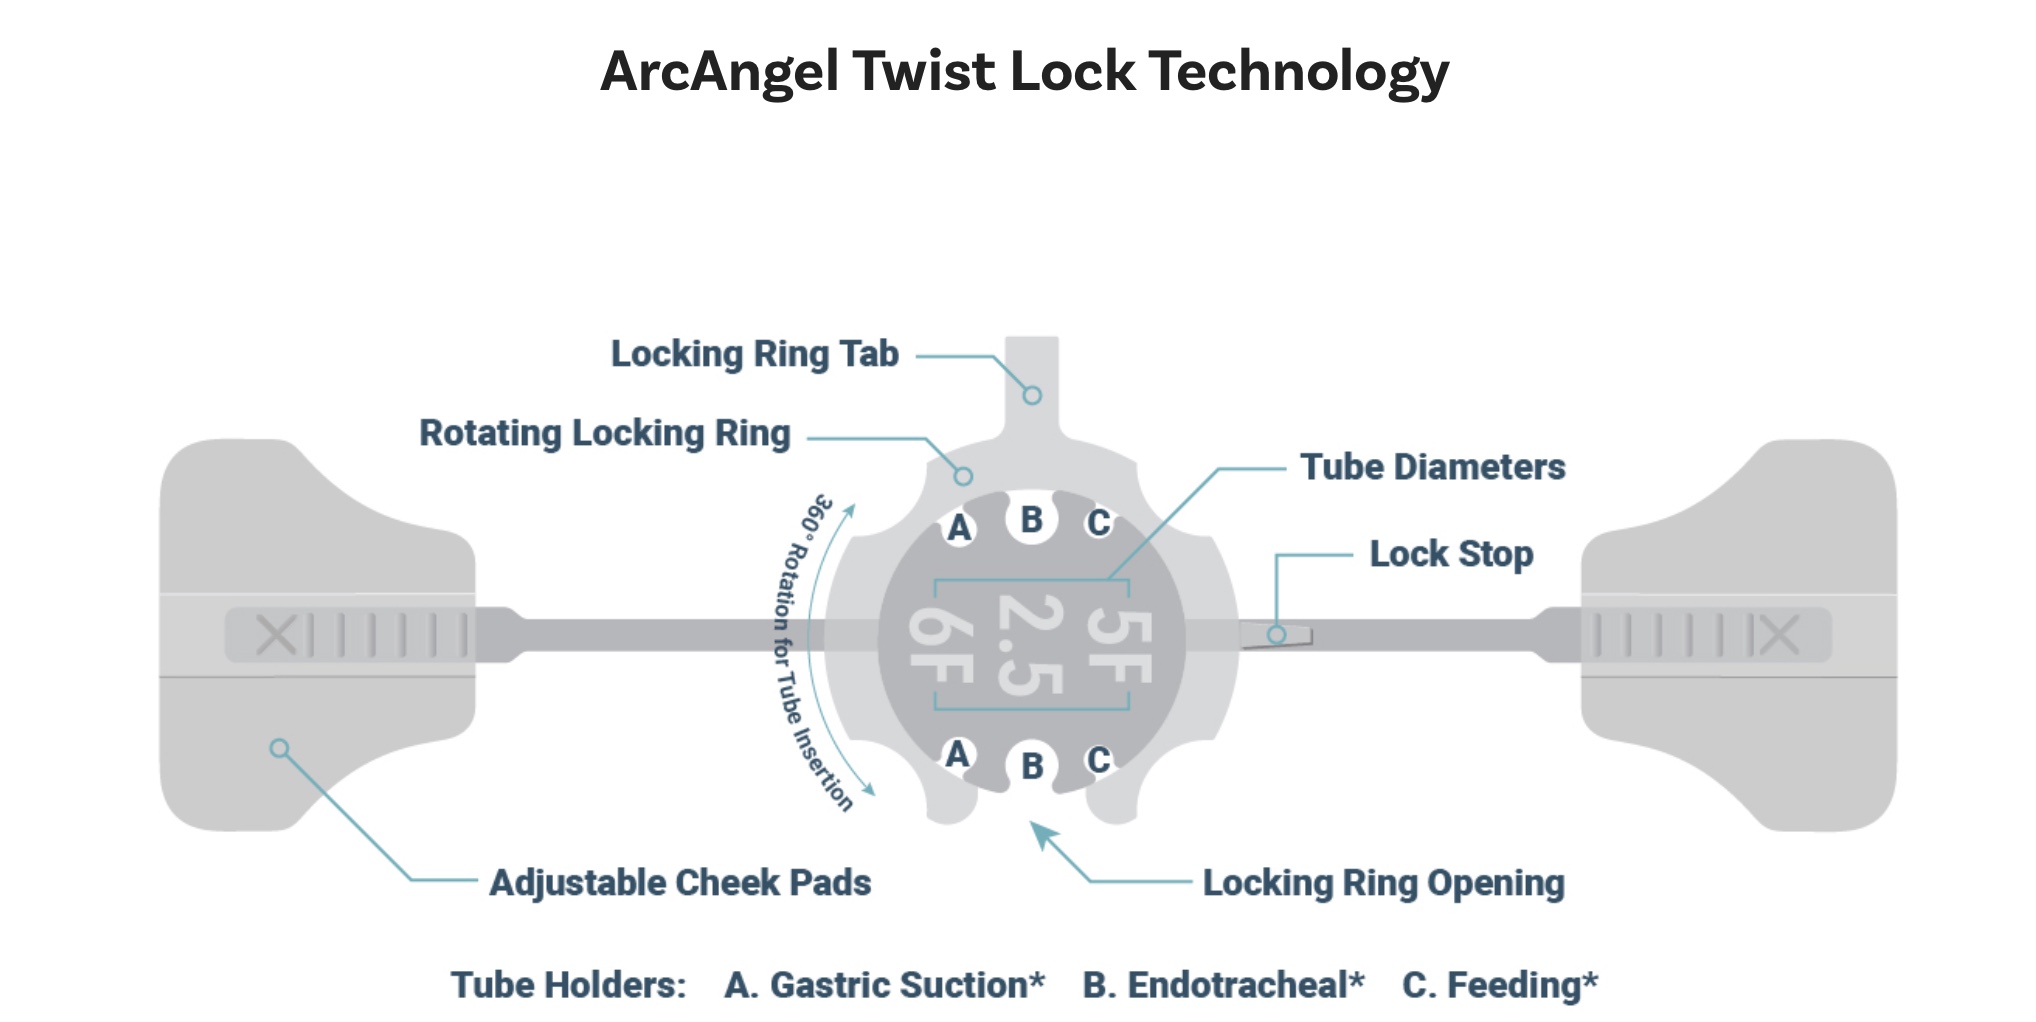 ArcAngel details